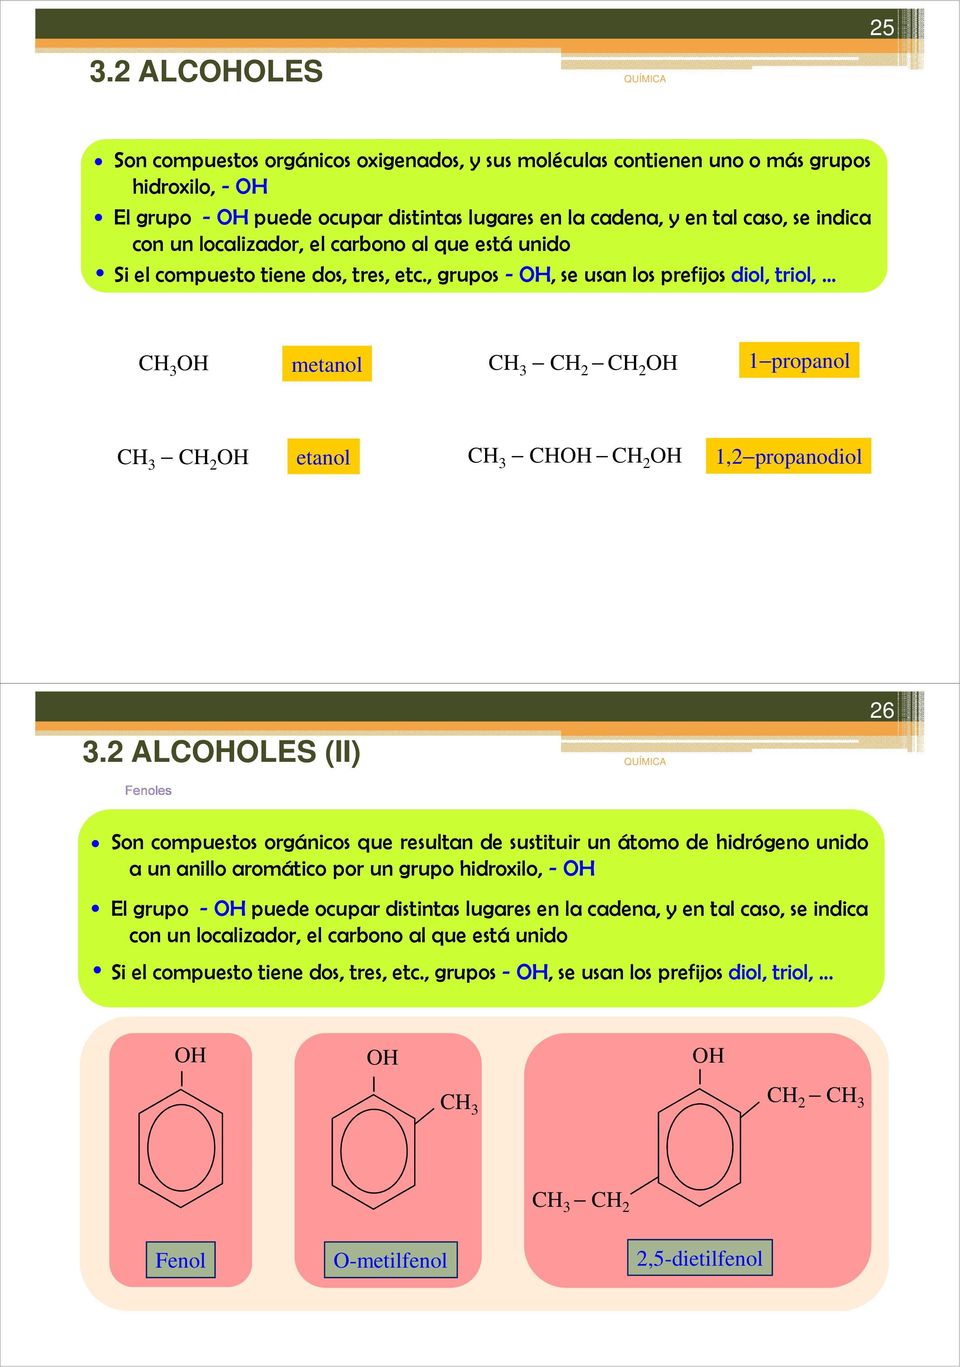 2 ALLES (II) Fenoles 26 Son compuestos orgánicos que resultan de sustituir un átomo de hidrógeno unido a un anillo aromático por un grupo hidroxilo, - El grupo - puede ocupar distintas lugares en